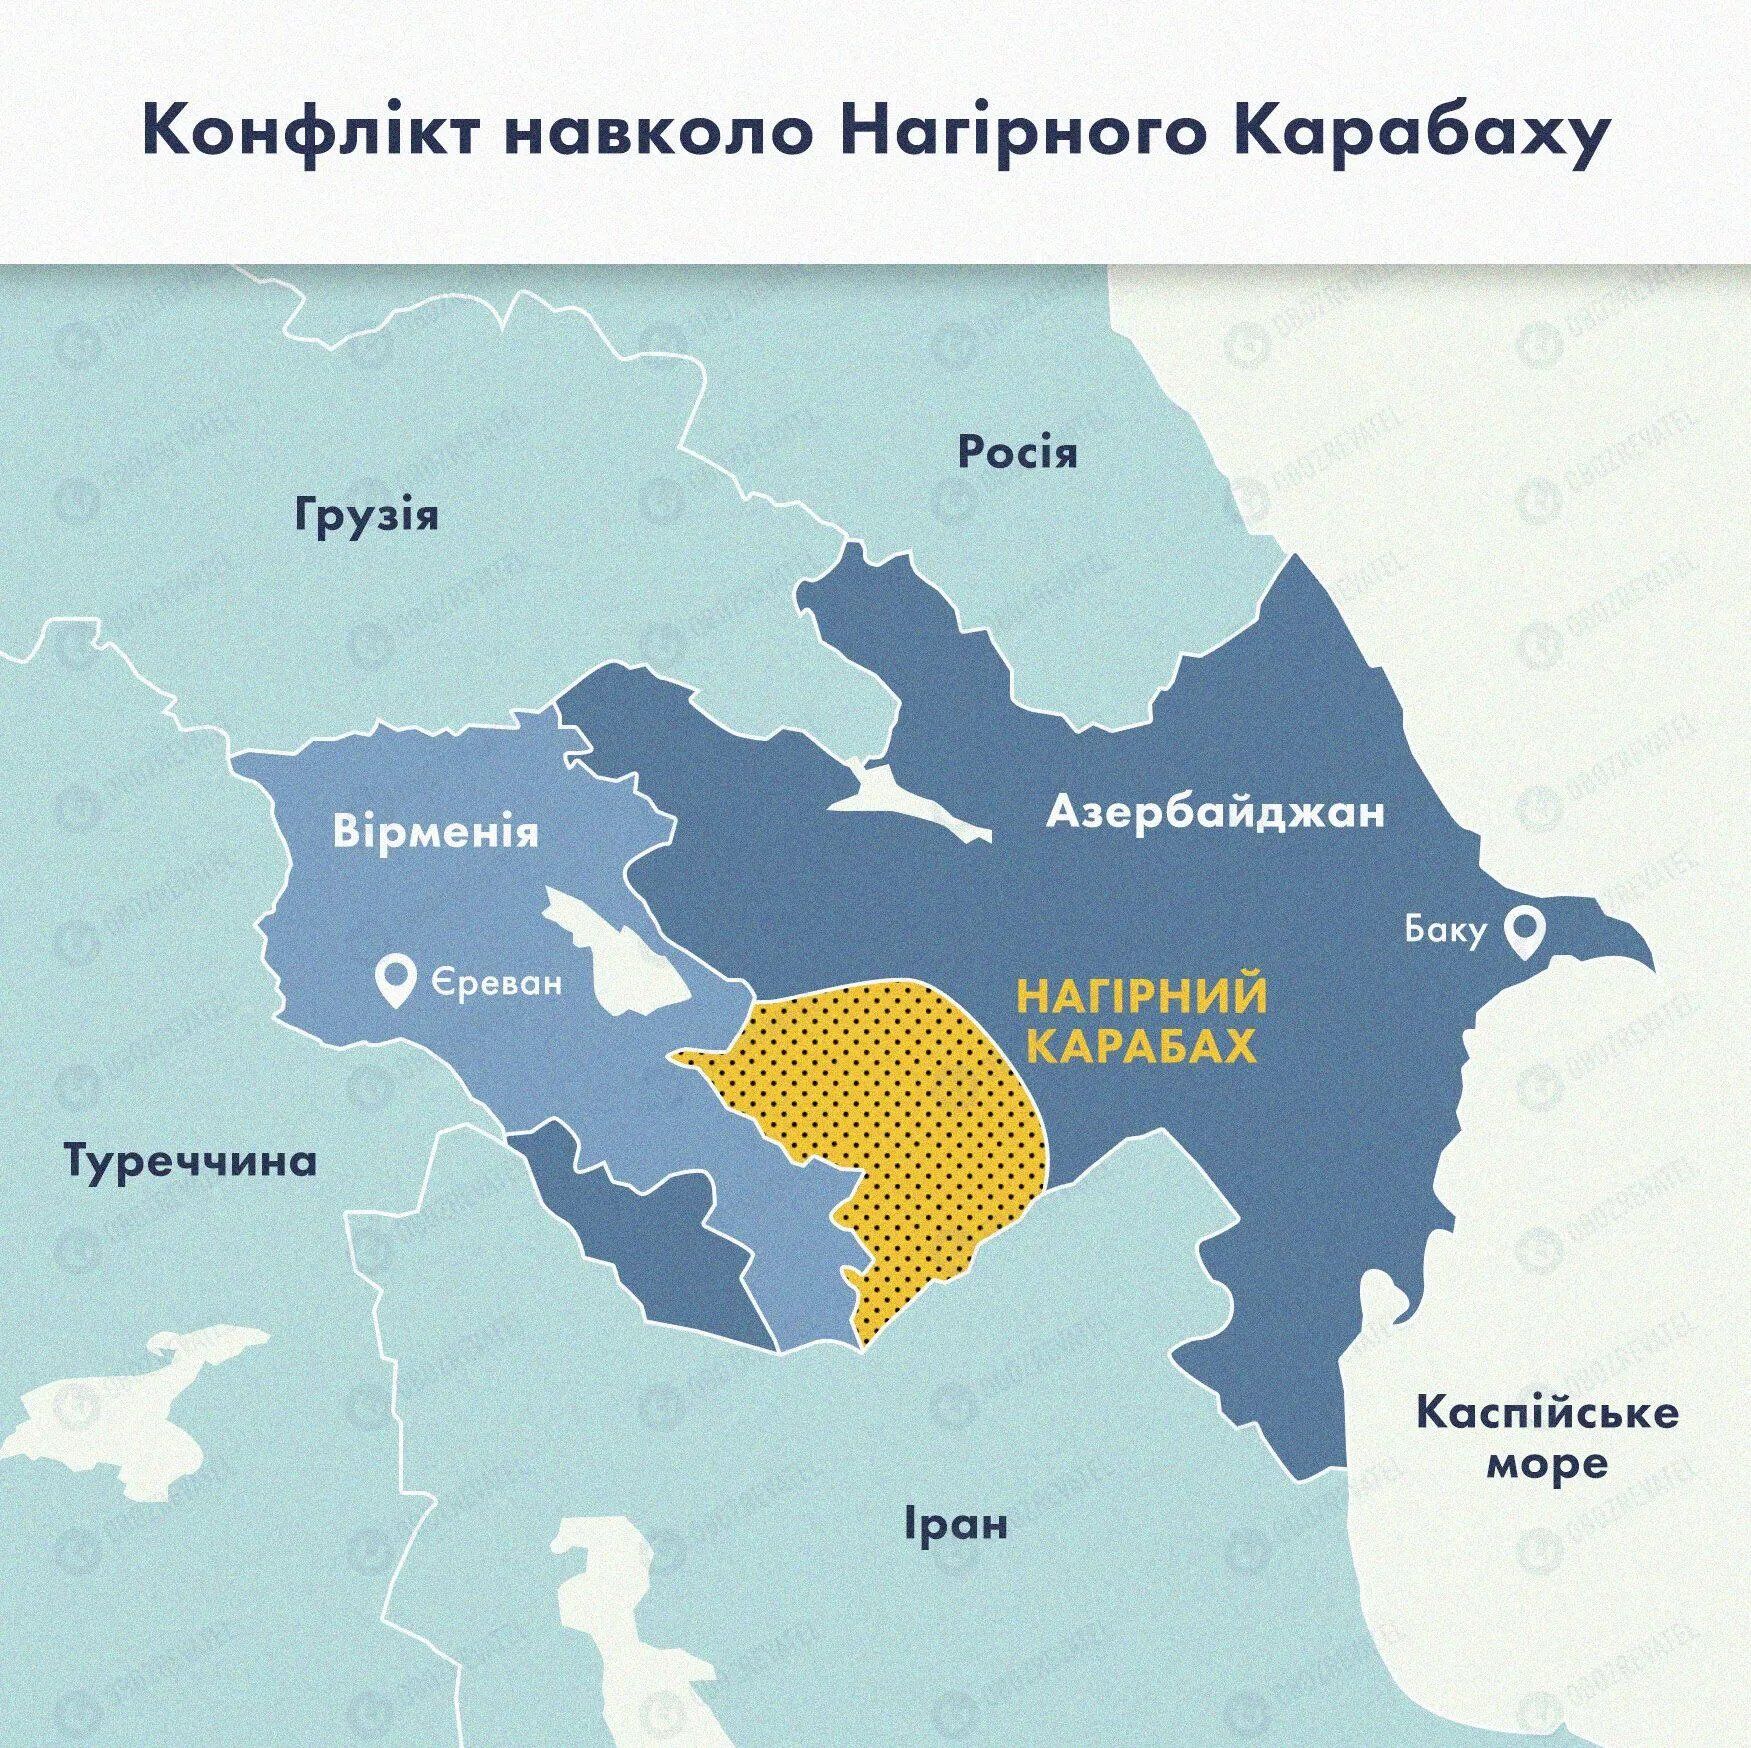 Карта щодо конфлікту в Нагорному Карабасі